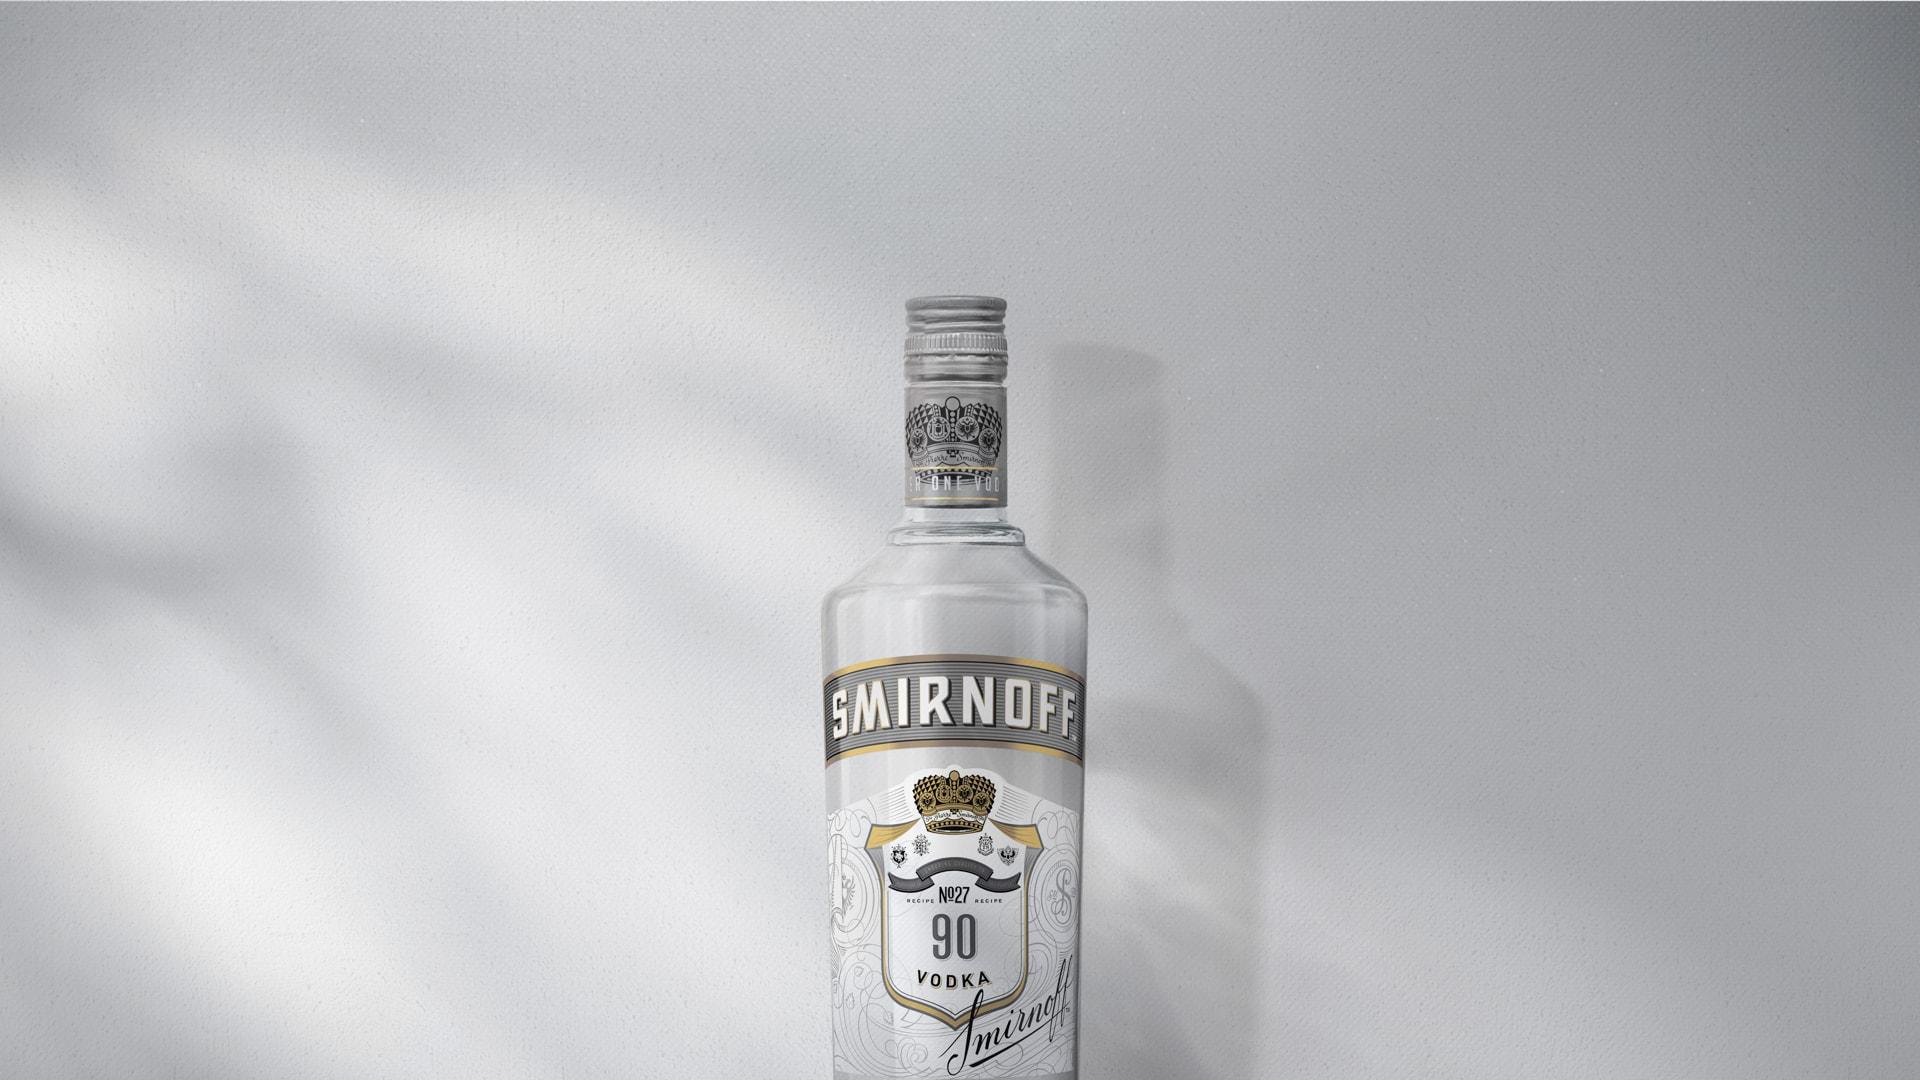 Smirnoff 27 Vodka on grey background